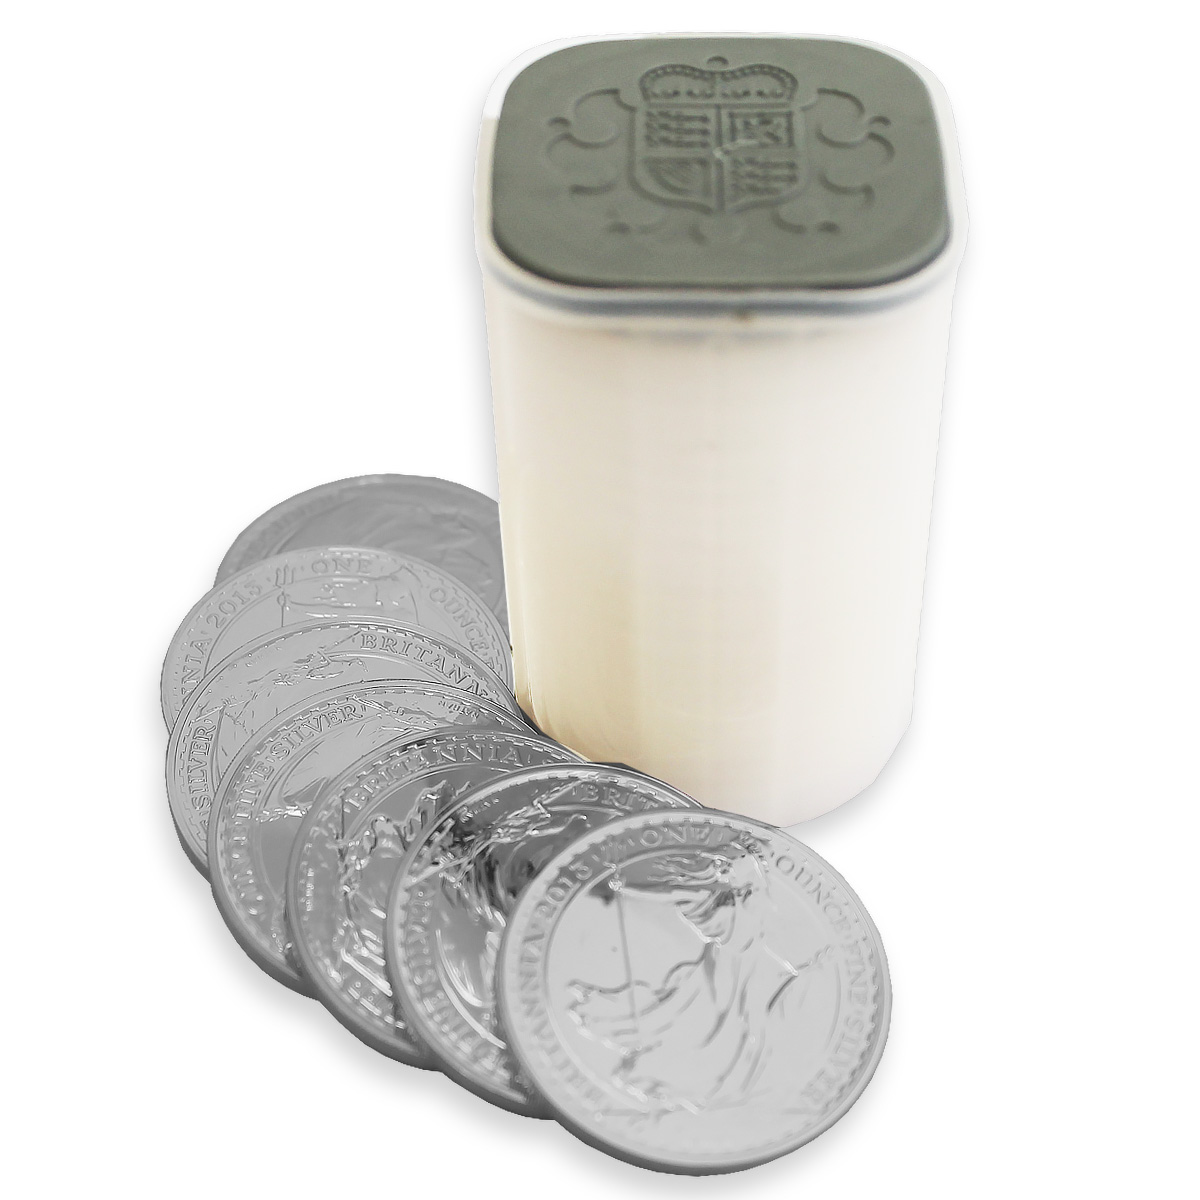 Silver Britannia 2014 Tube (25 Coins)